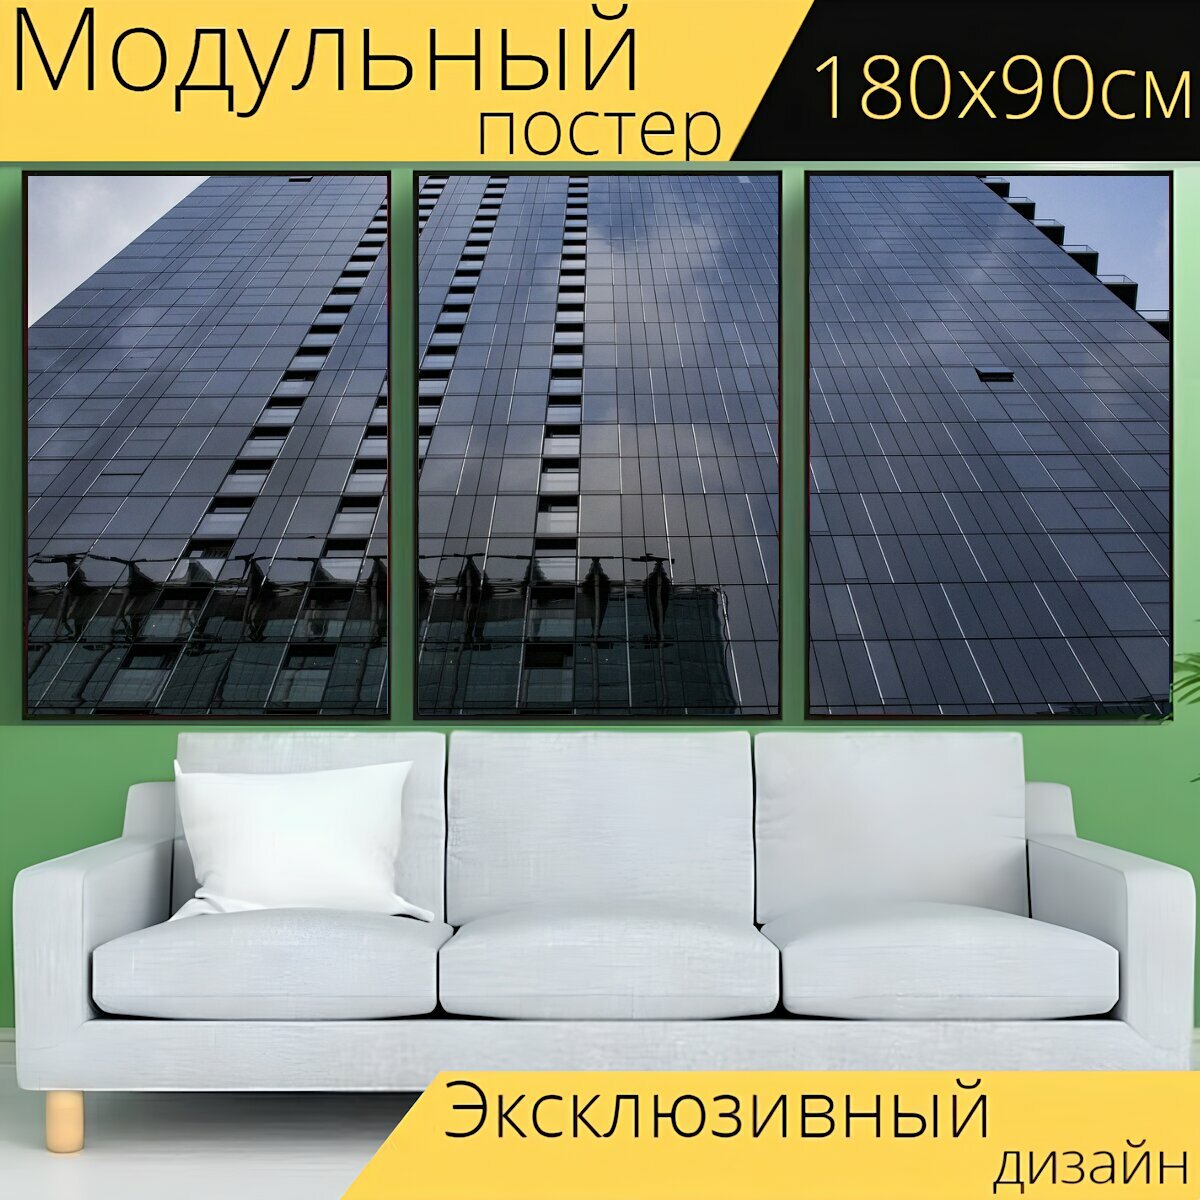 Модульный постер "Город, офисы, архитектуры" 180 x 90 см. для интерьера